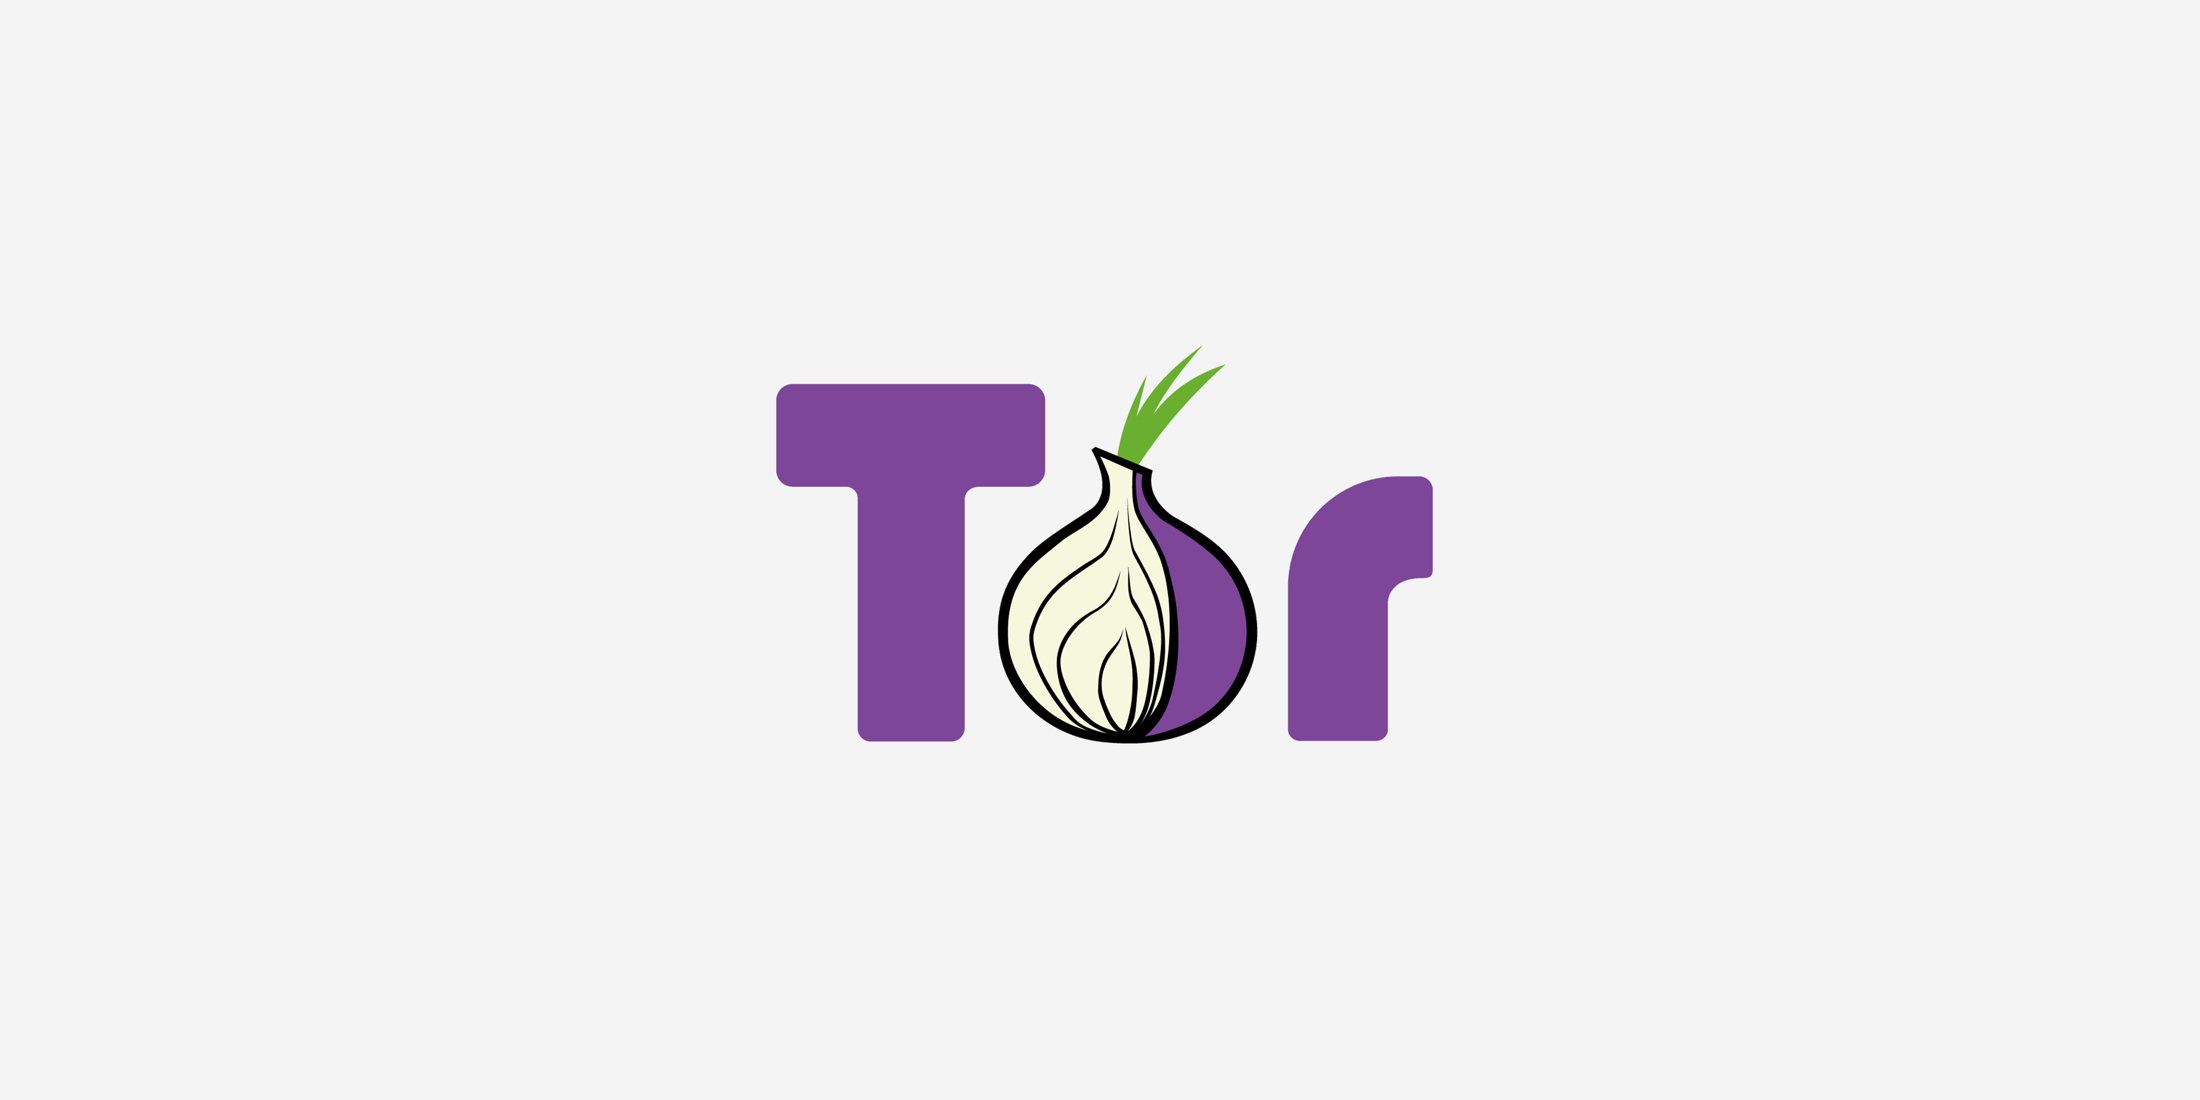 Тор браузер deb gydra tor browser андроид на русском скачать бесплатно вход на гидру